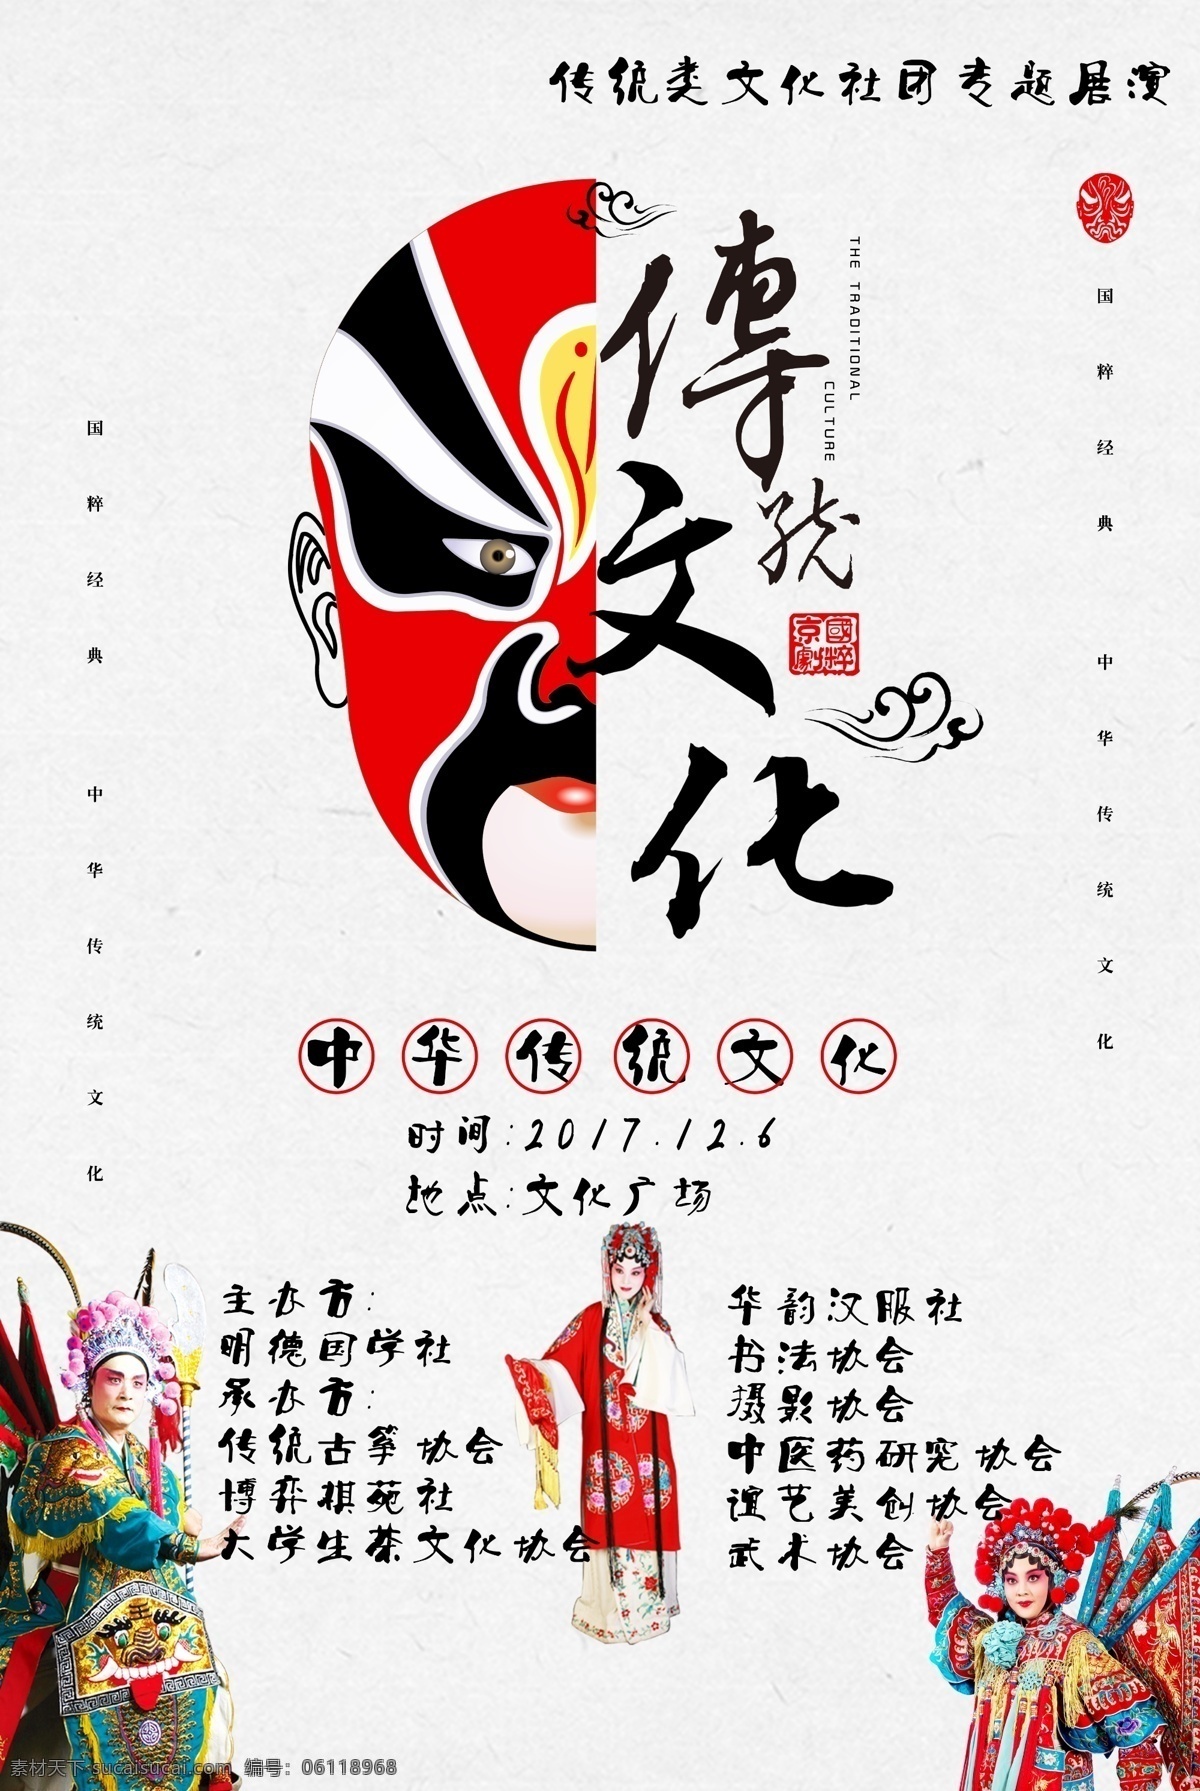 脸谱 京剧 传统文化 海报 传统 文化 文化艺术